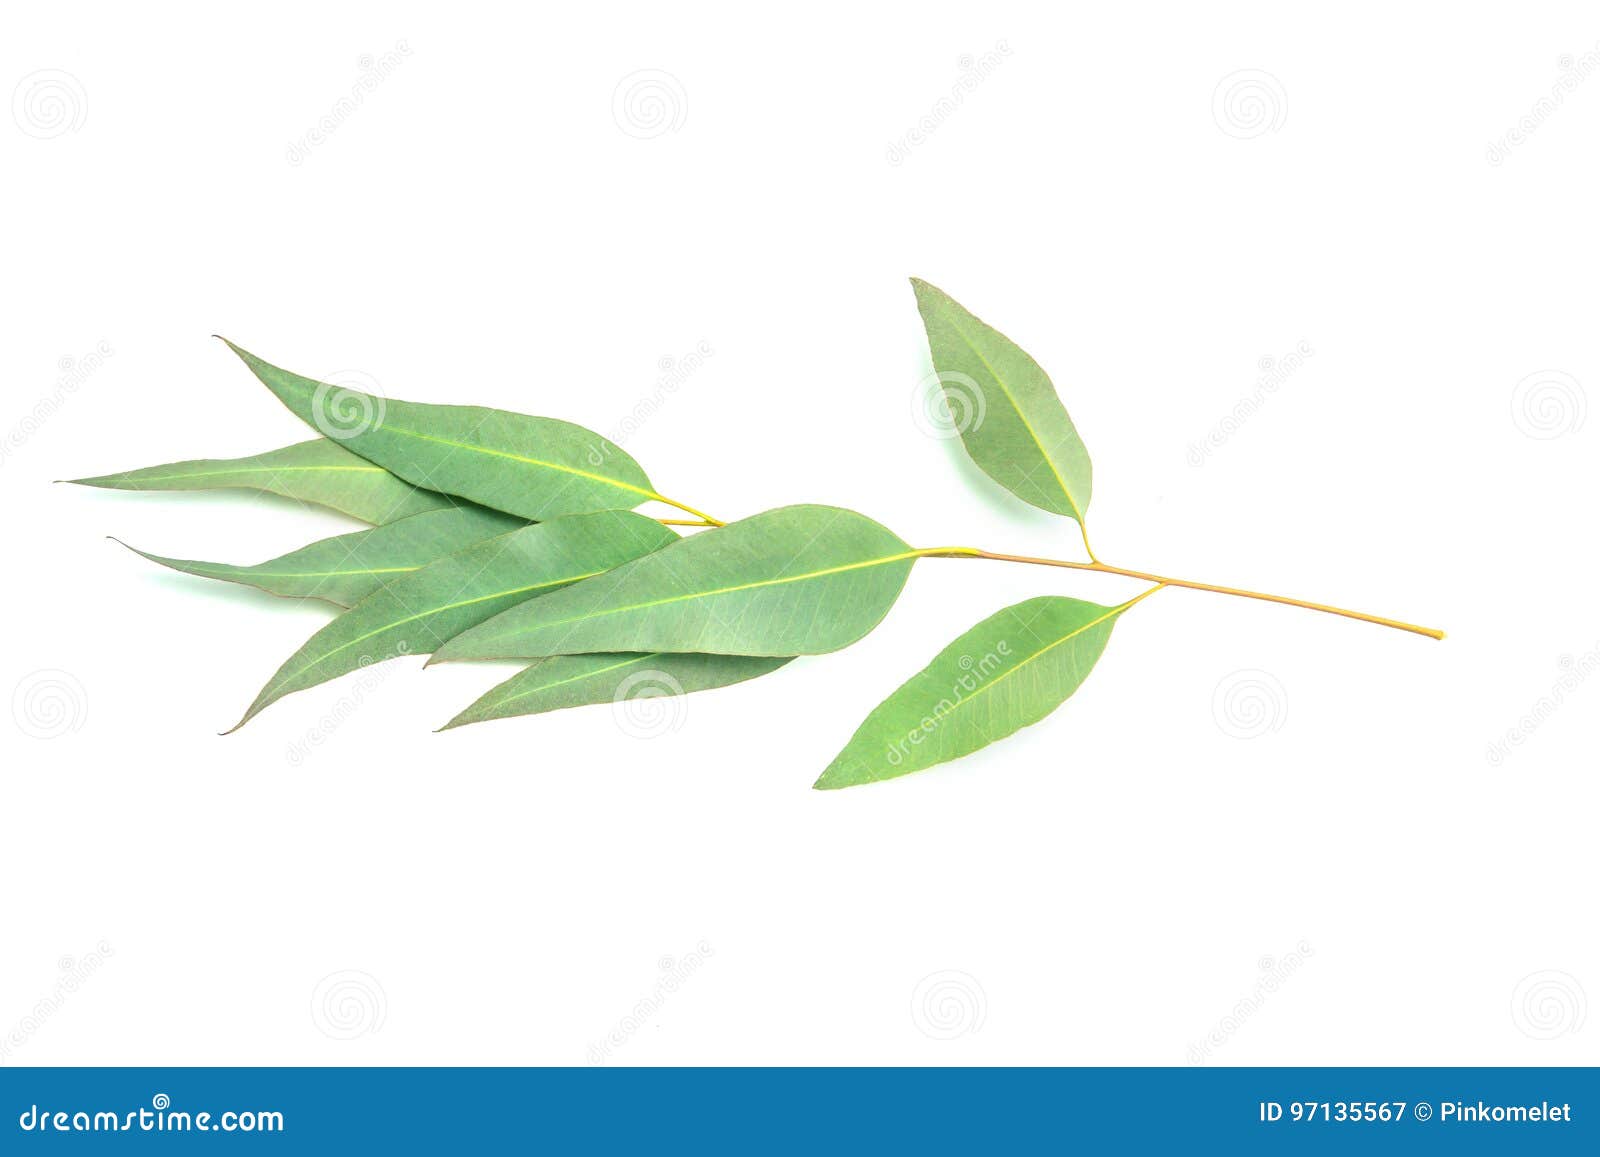 Eucalyptus Leaves on White Background Stock Image - Image of eucalyptus ...